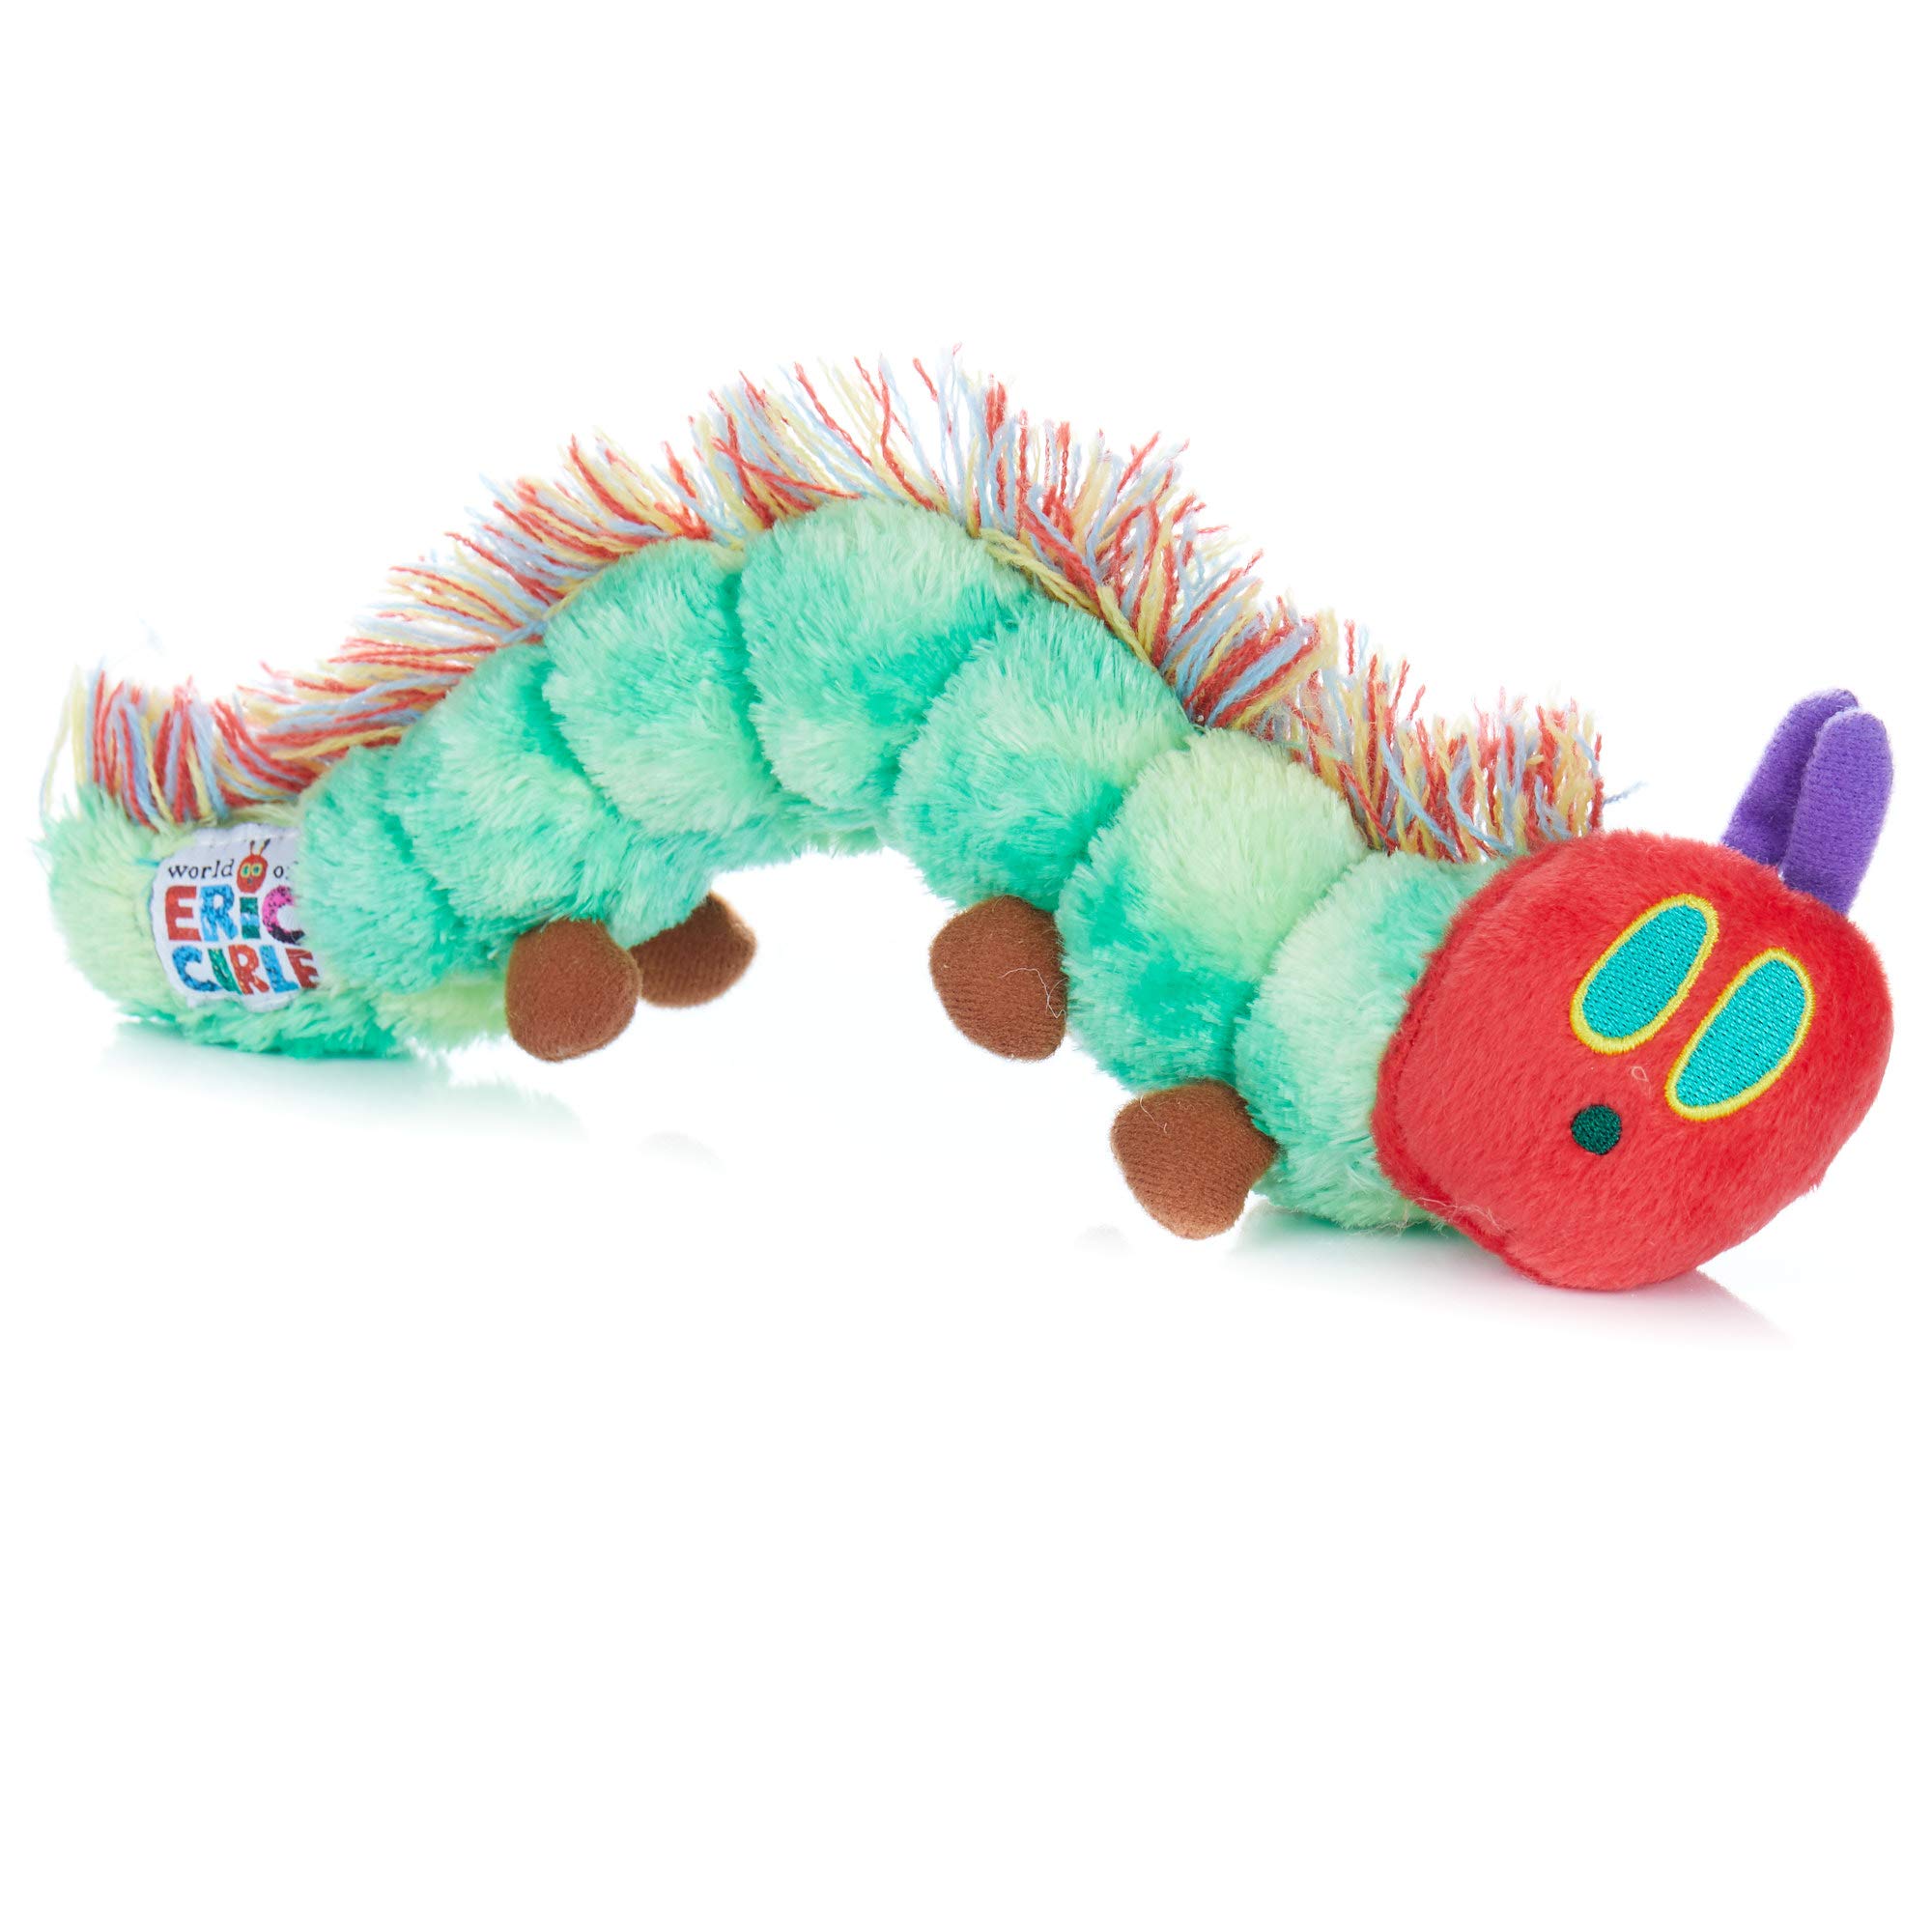 eric carle caterpillar toy